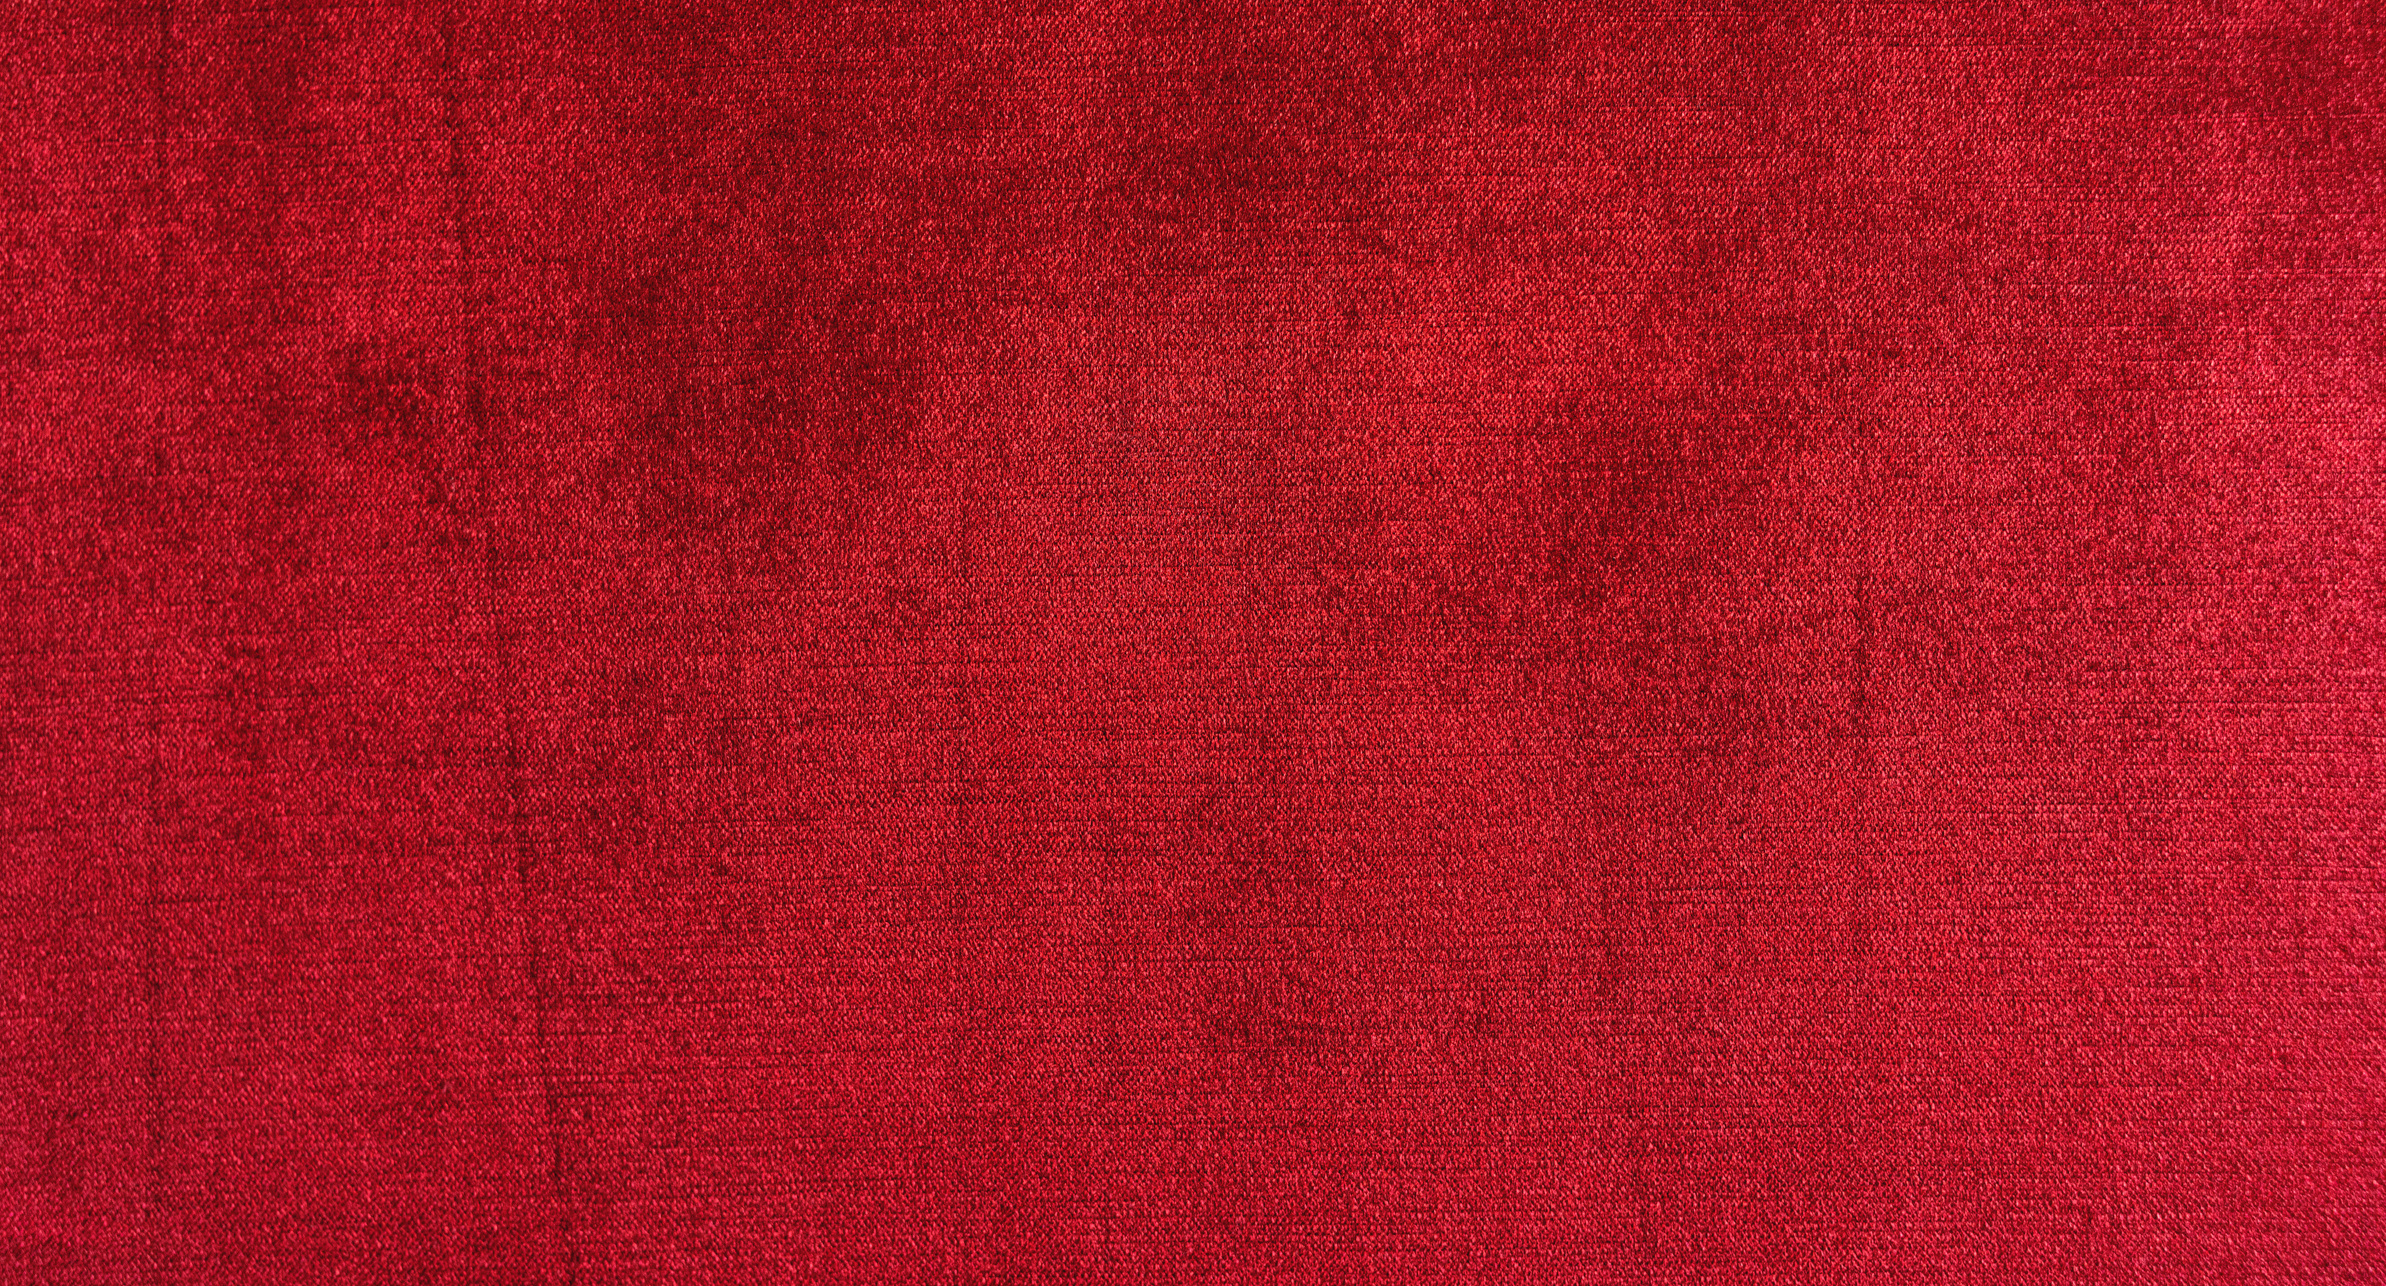 Red velvet texture background